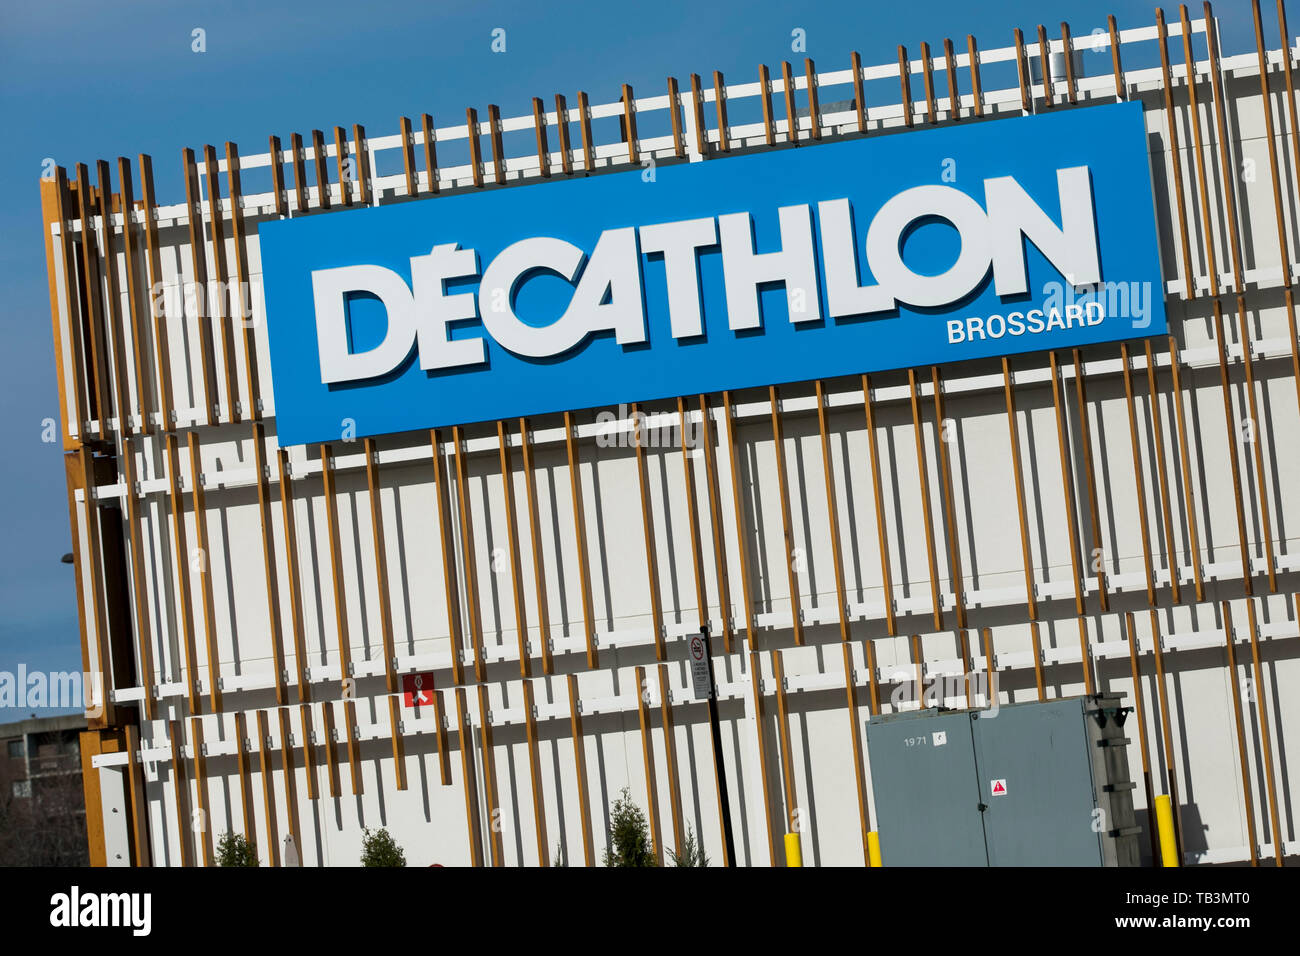 Decathlon logo Banque de photographies et d'images à haute résolution -  Page 2 - Alamy